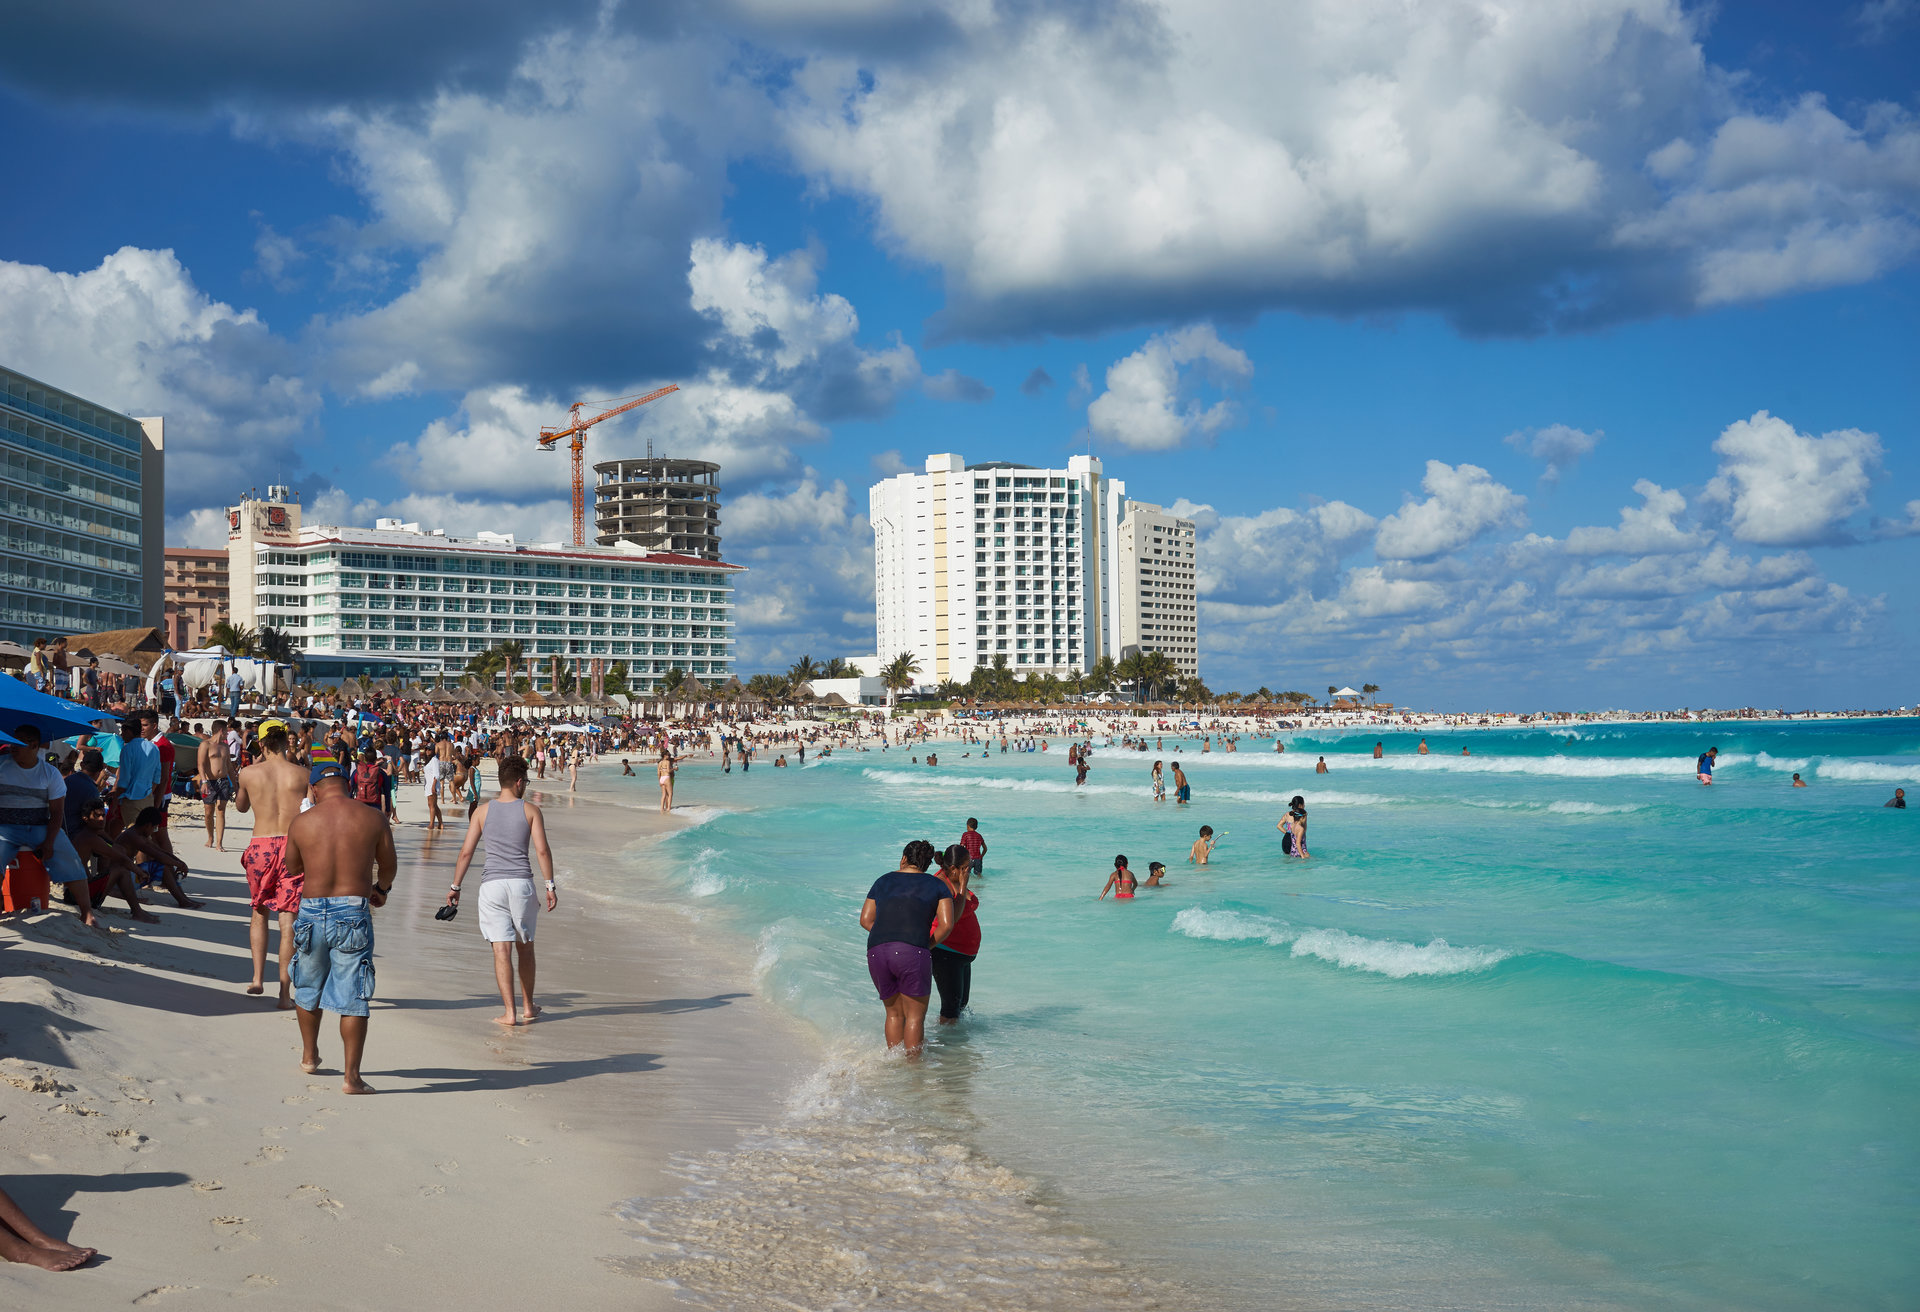 Não faltam lindos cenários naturais e gente animada do mundo todo em Cancún